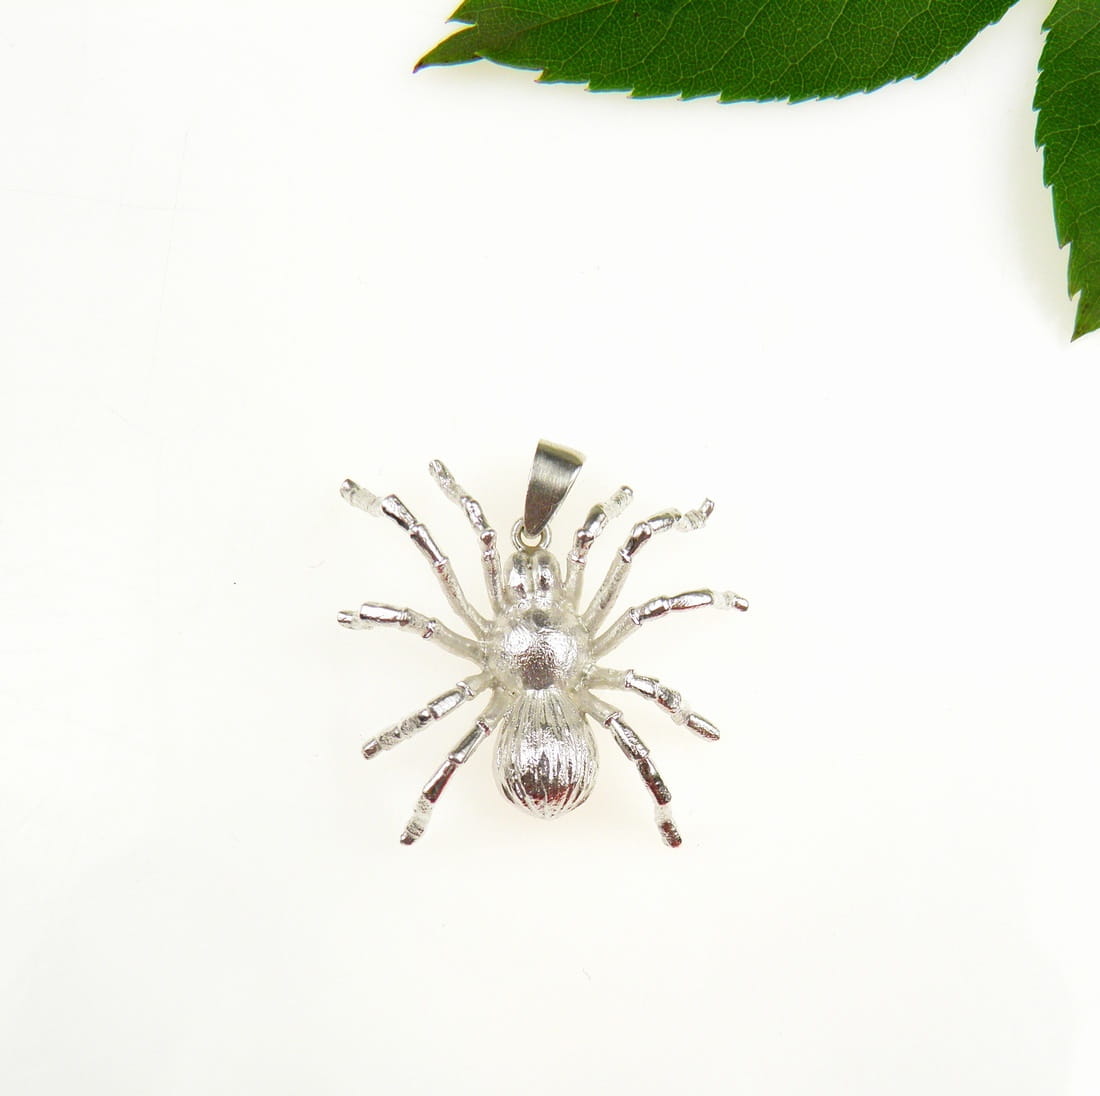 Wisiorek srebrny z pająkiem małym białym